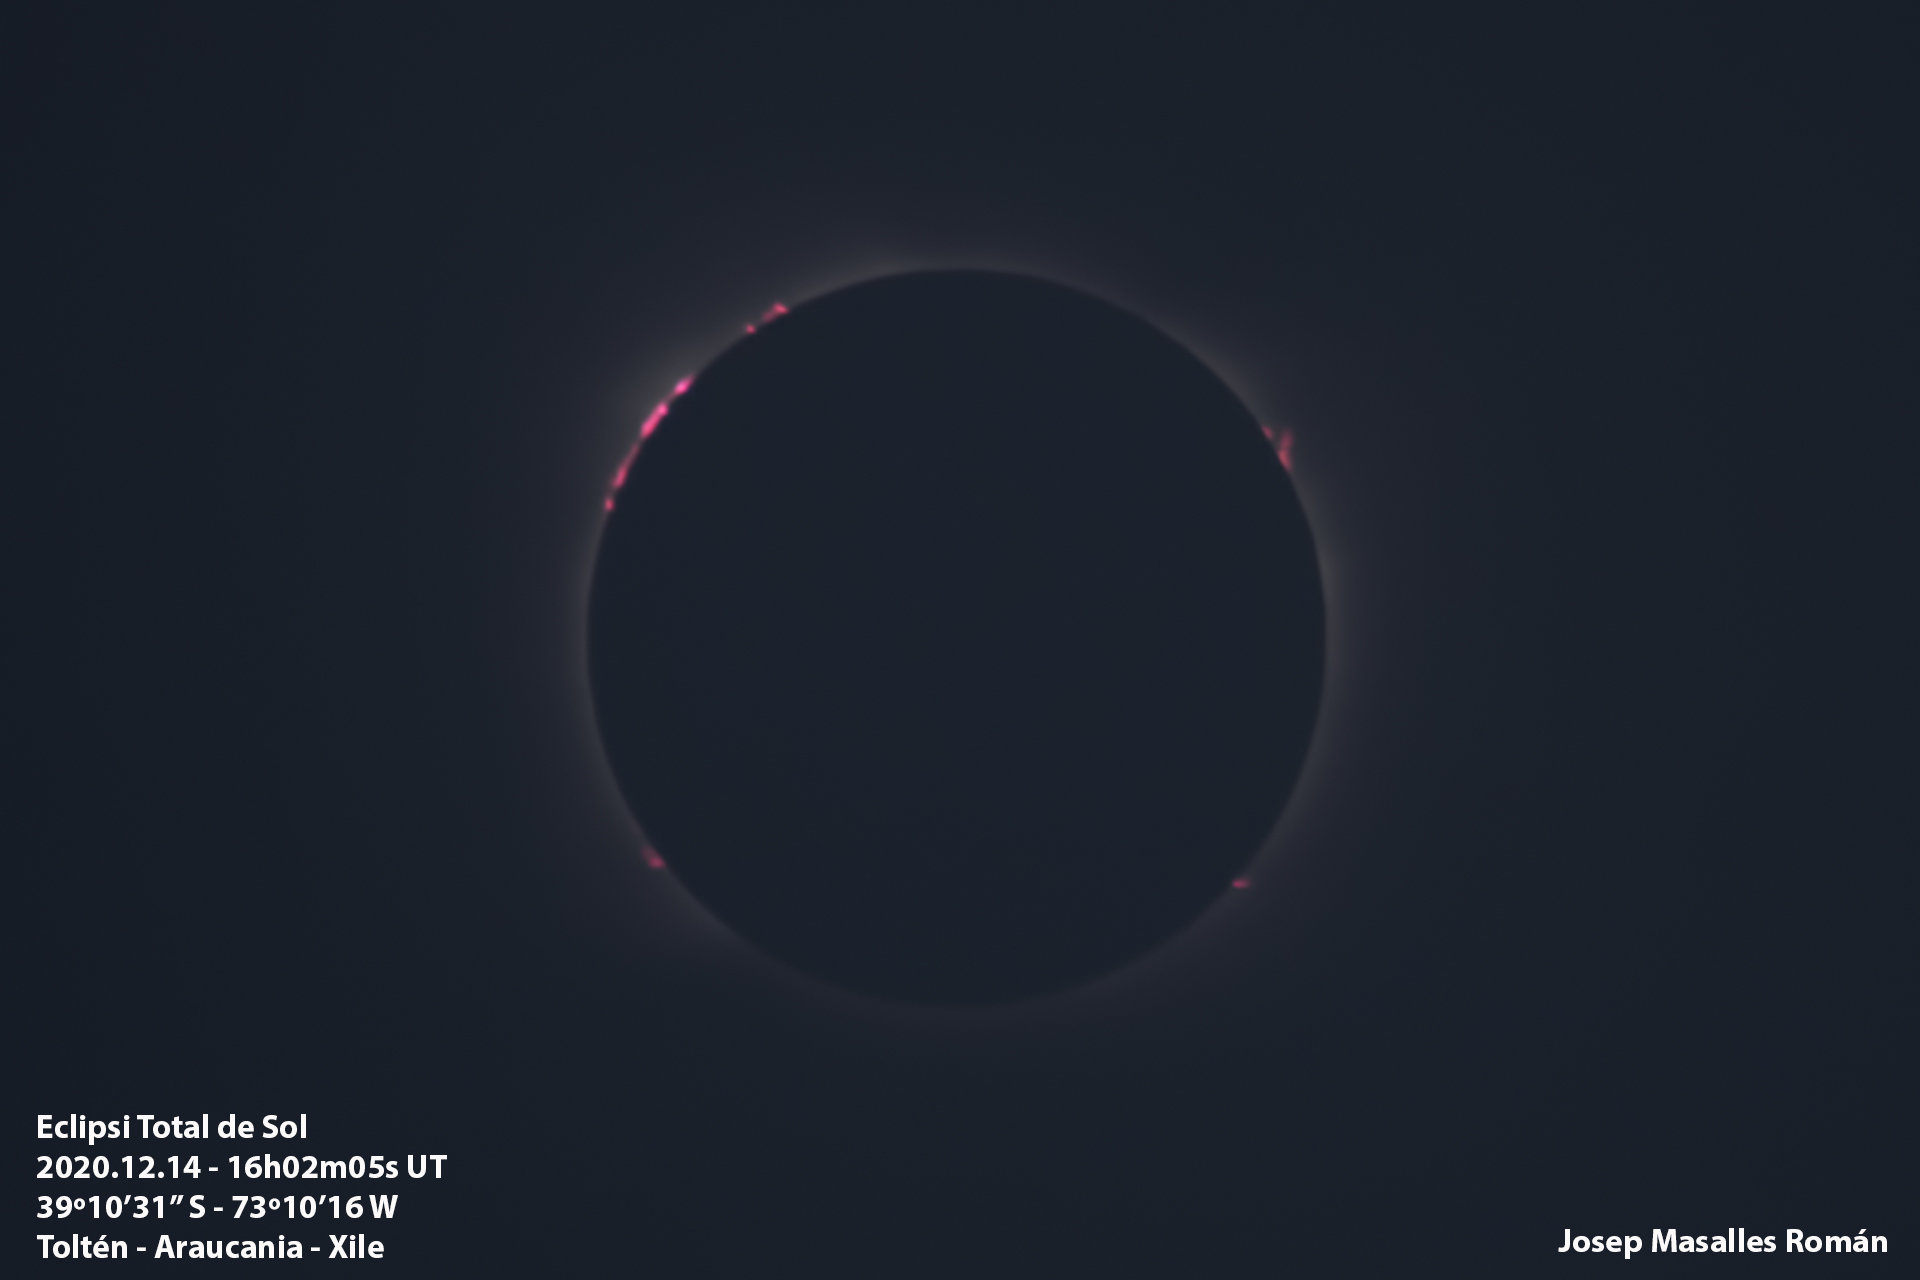 Eclipsi Total de Sol - Josep Masalles